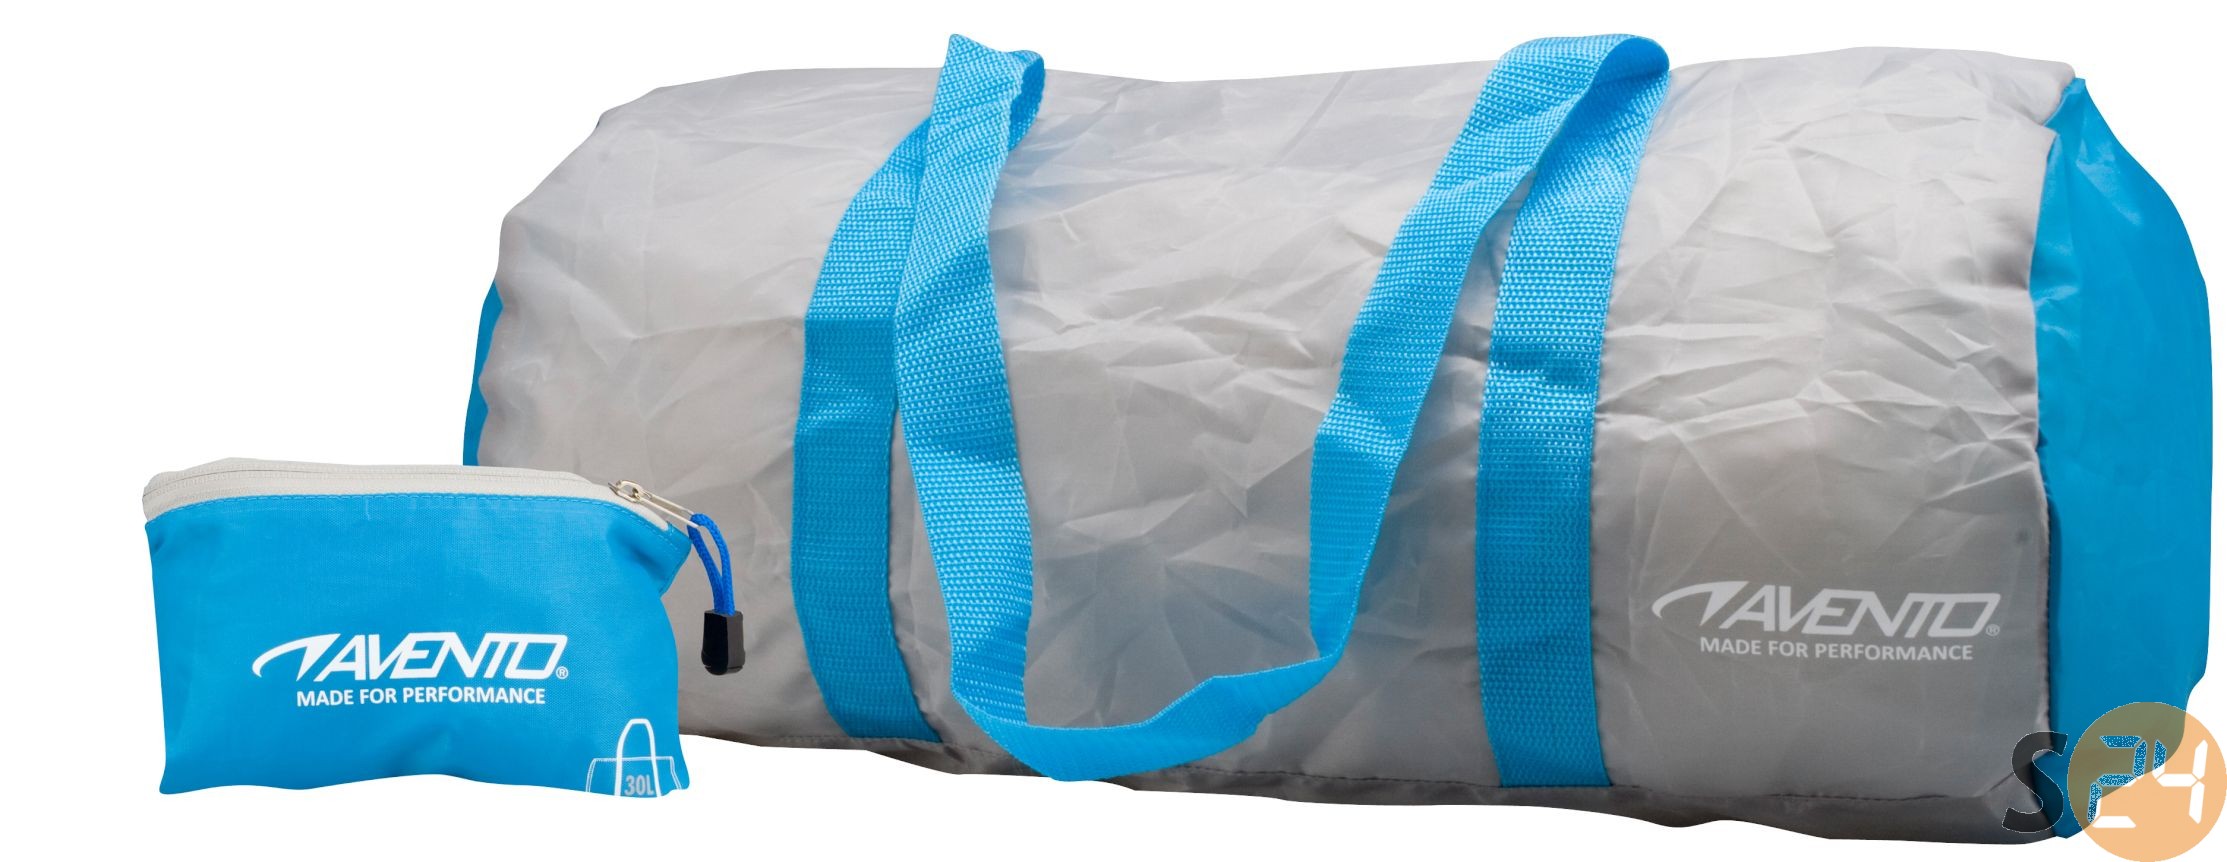 Avento bag in a sac sporttáska sc-18936